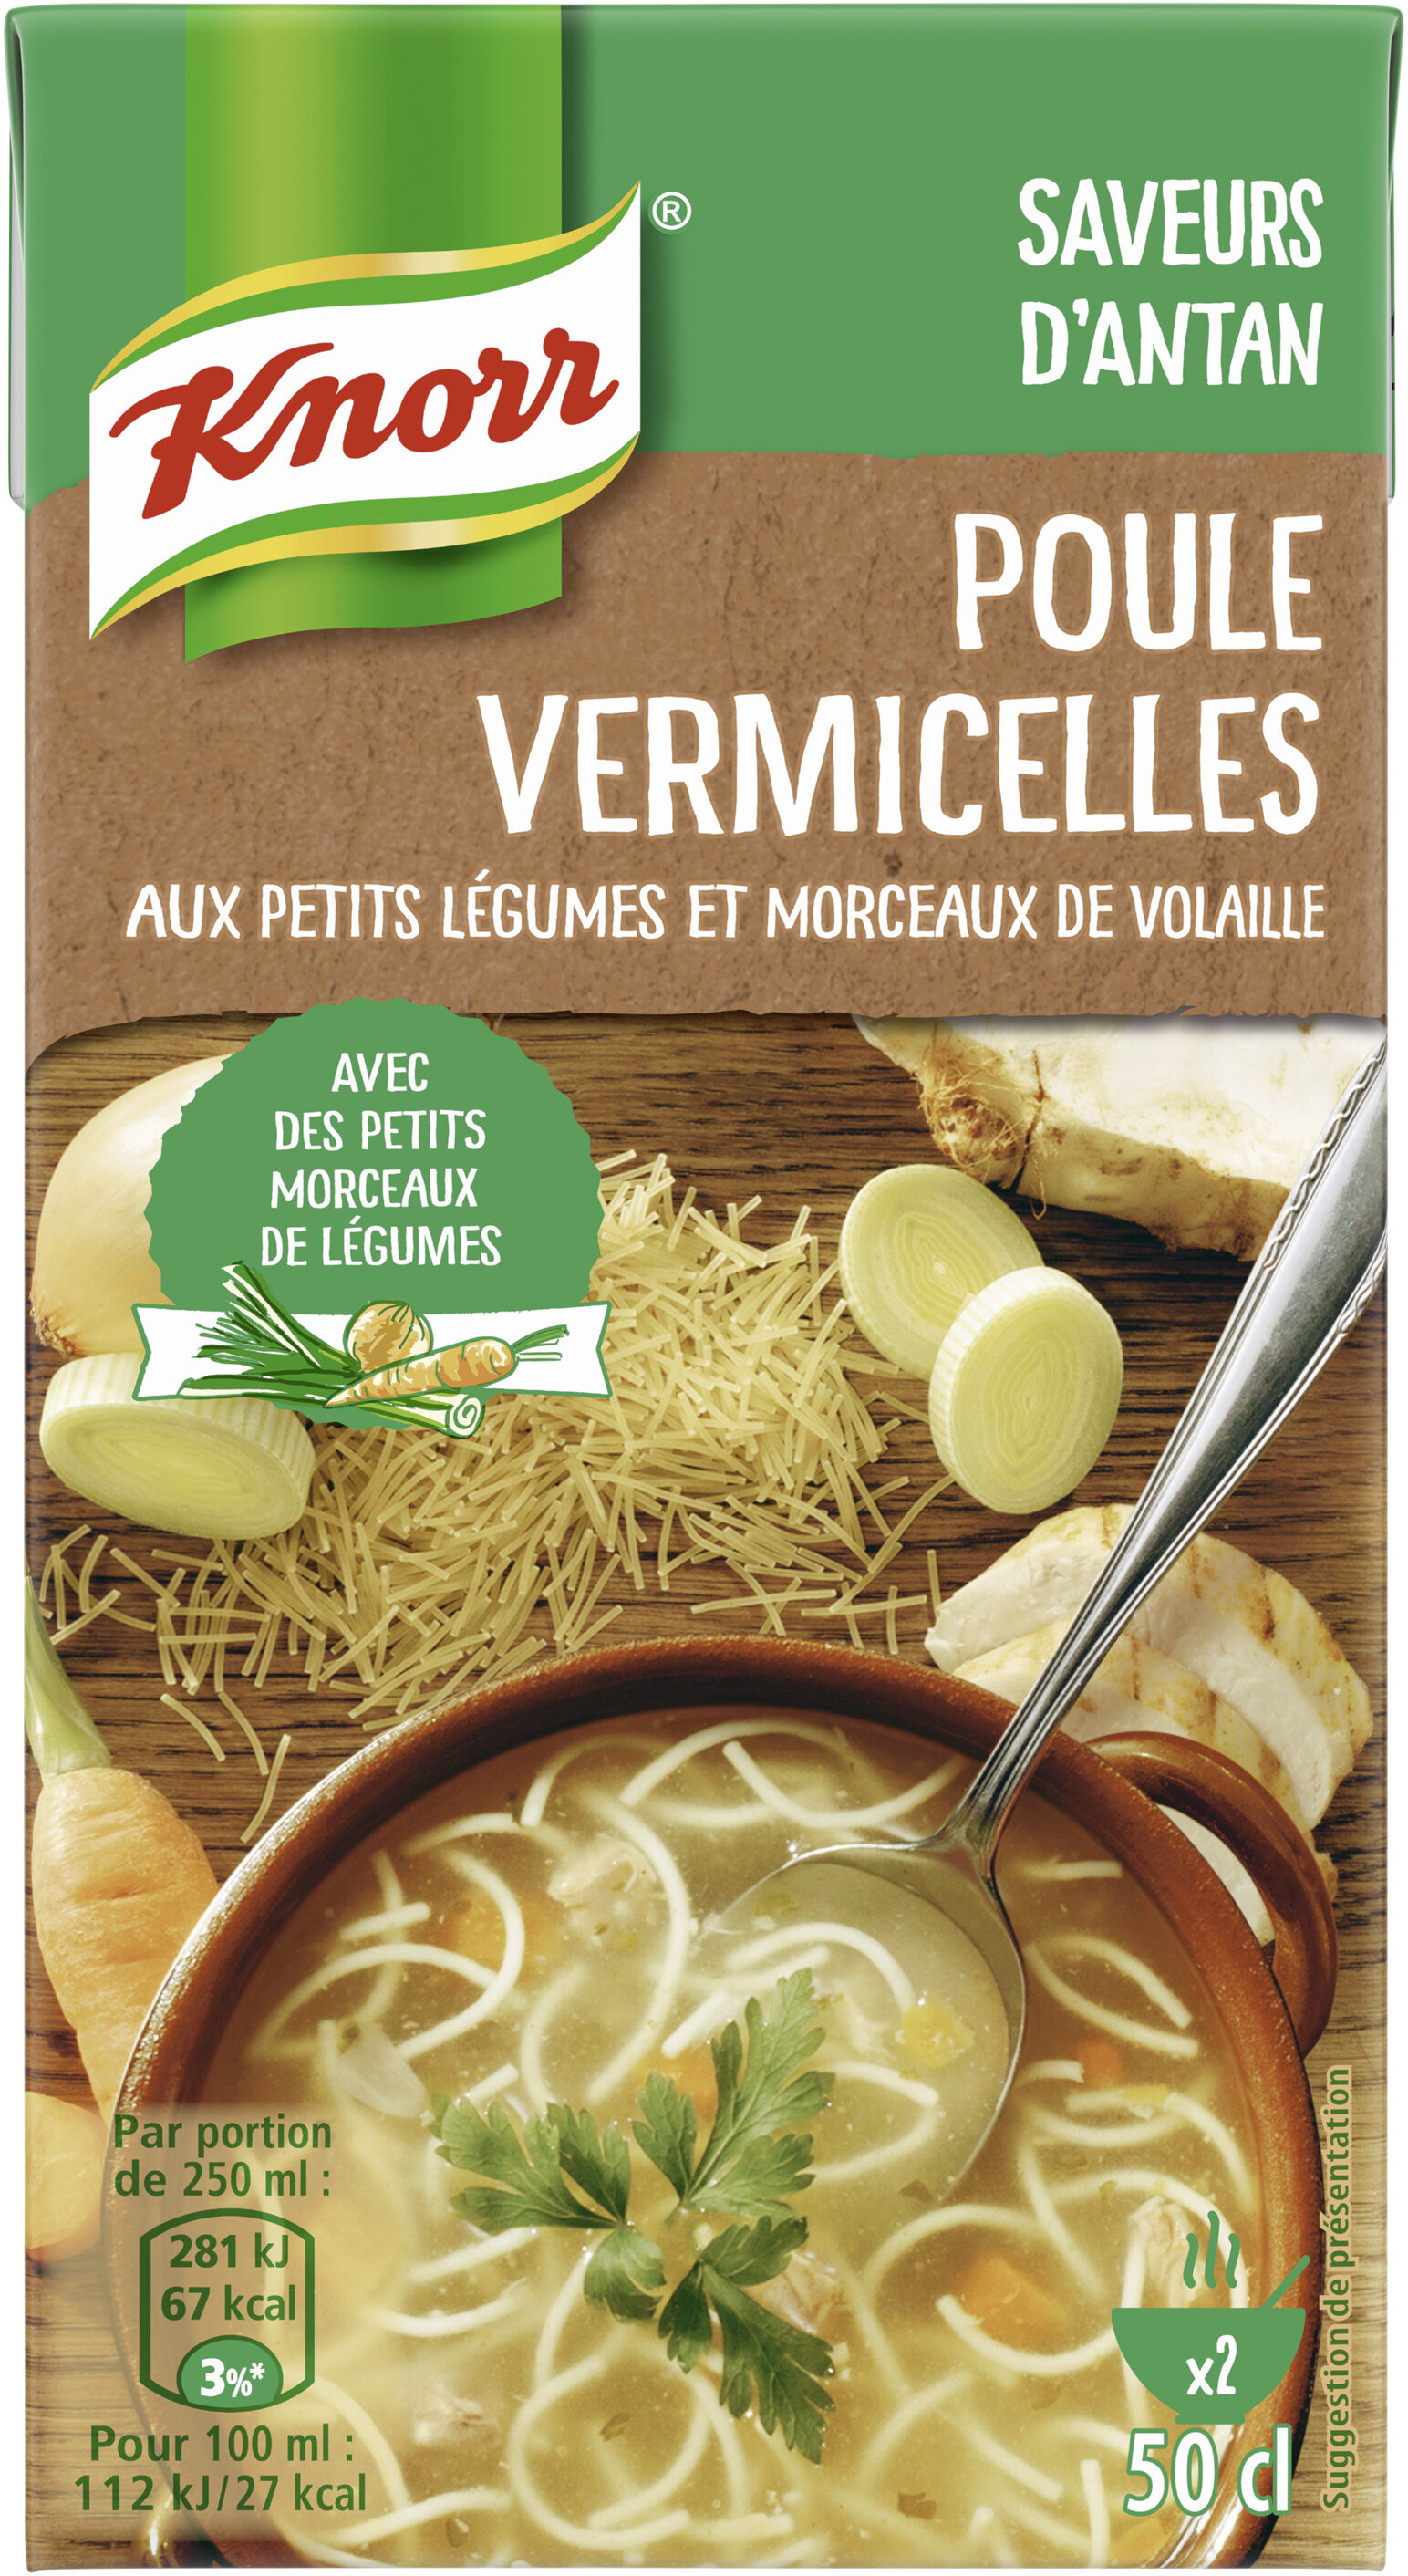 Knorr Saveurs d'Antan Soupe Poule Vermicelles 50cl - Product - fr